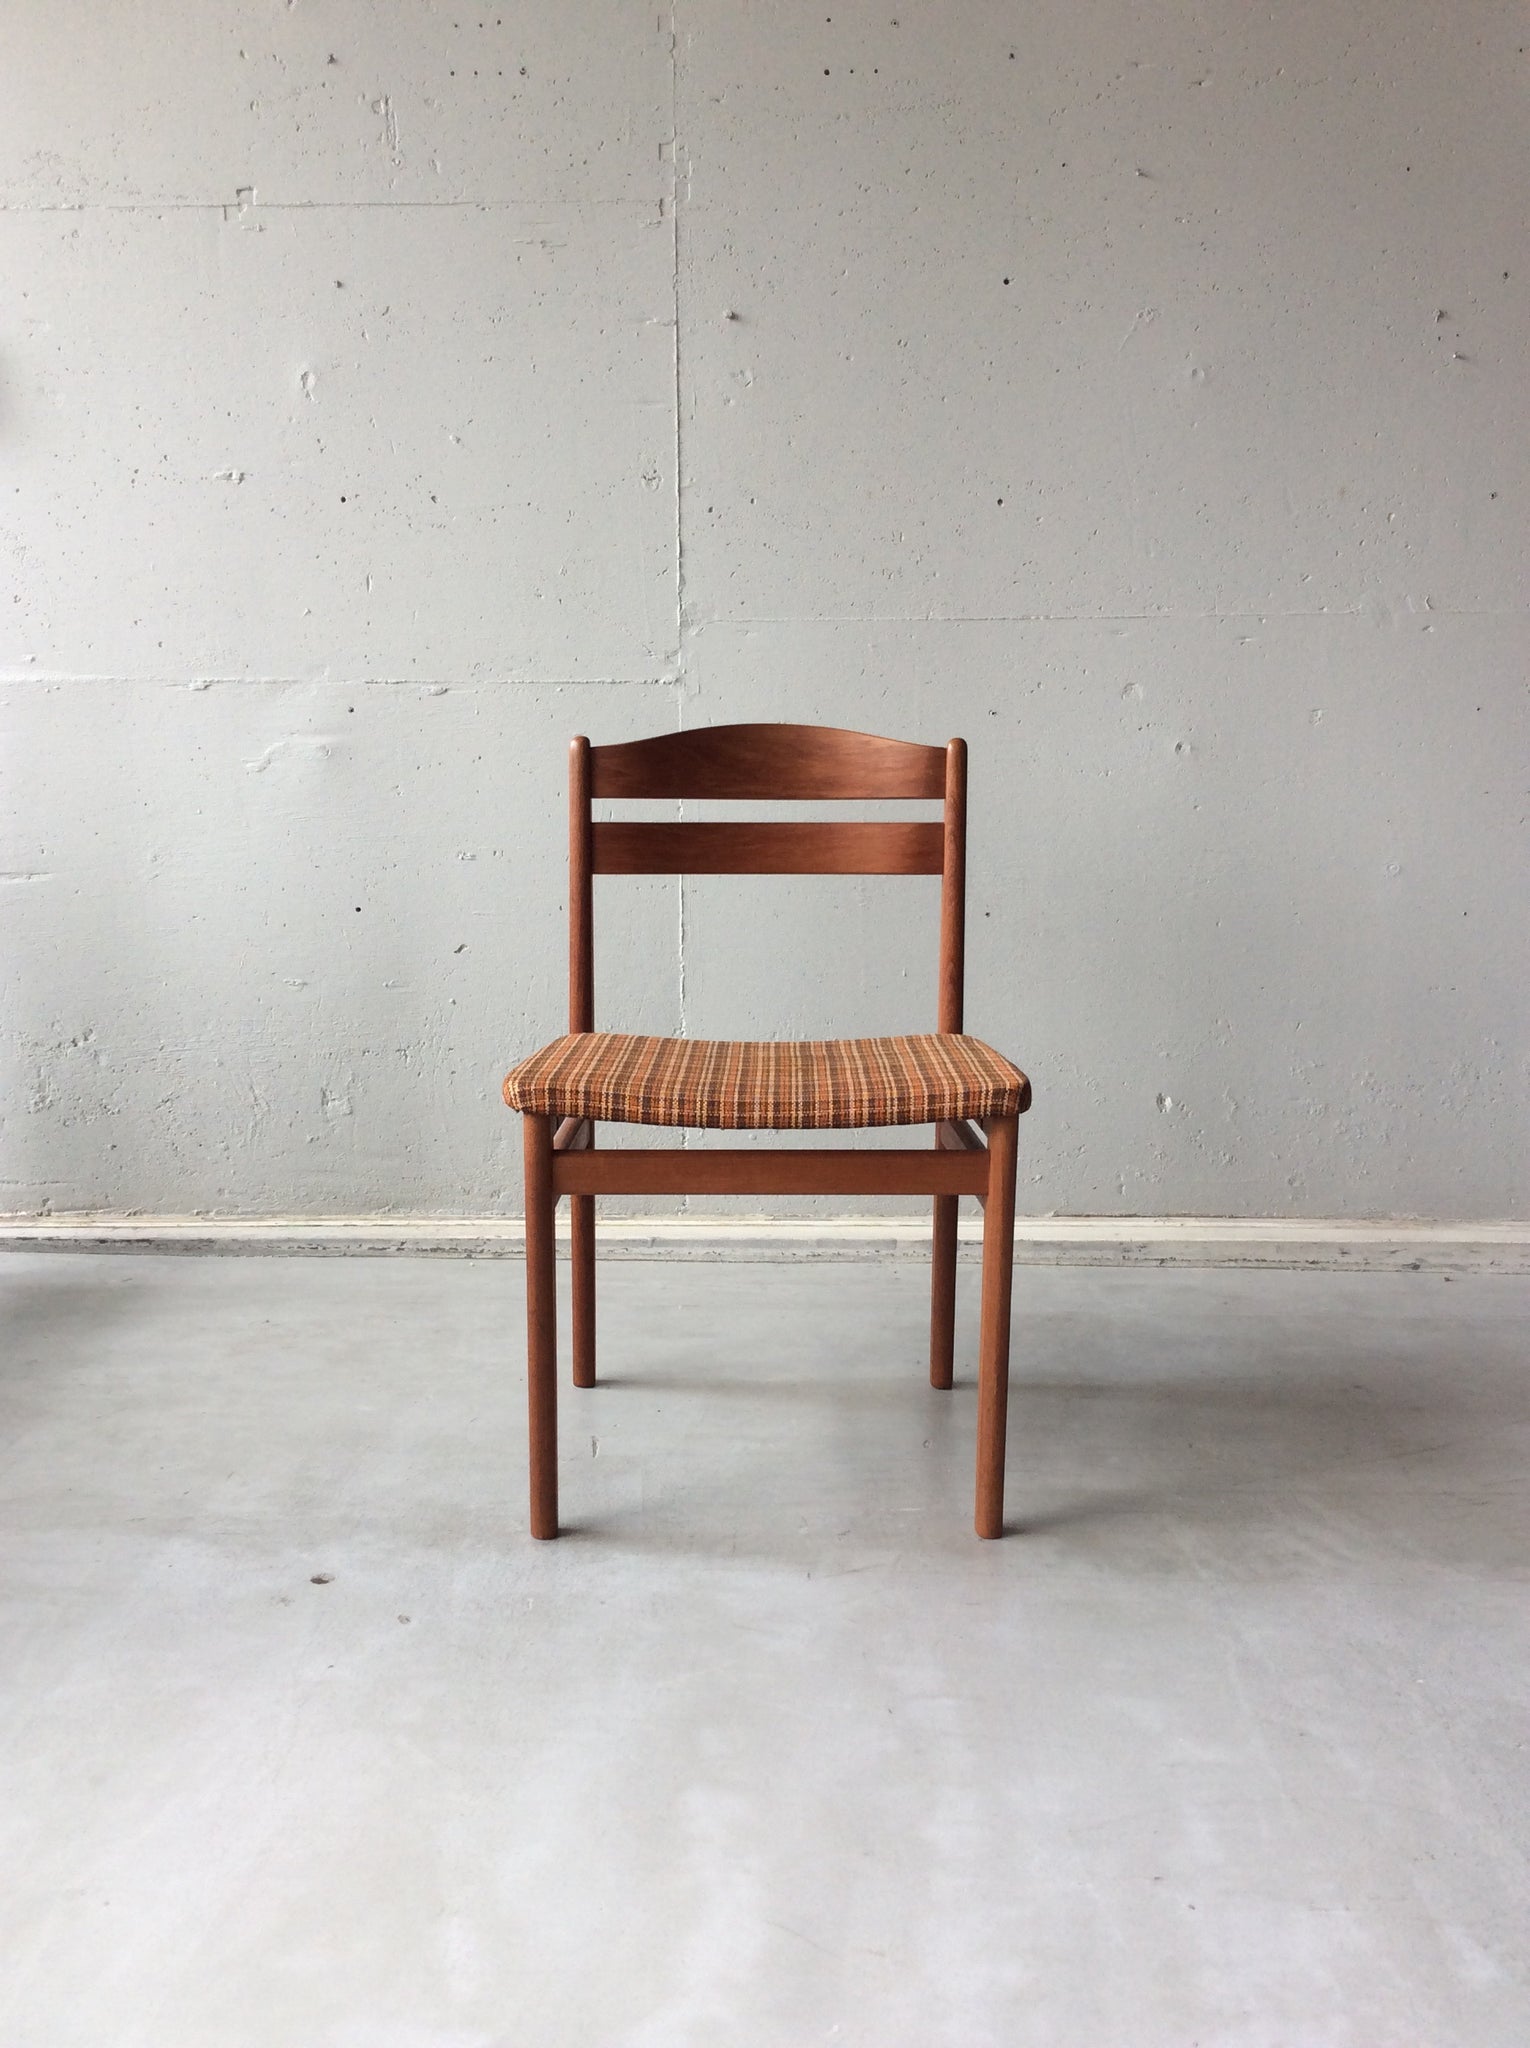 デンマーク チェア４脚セット / denmark chairs set of 4 #0058